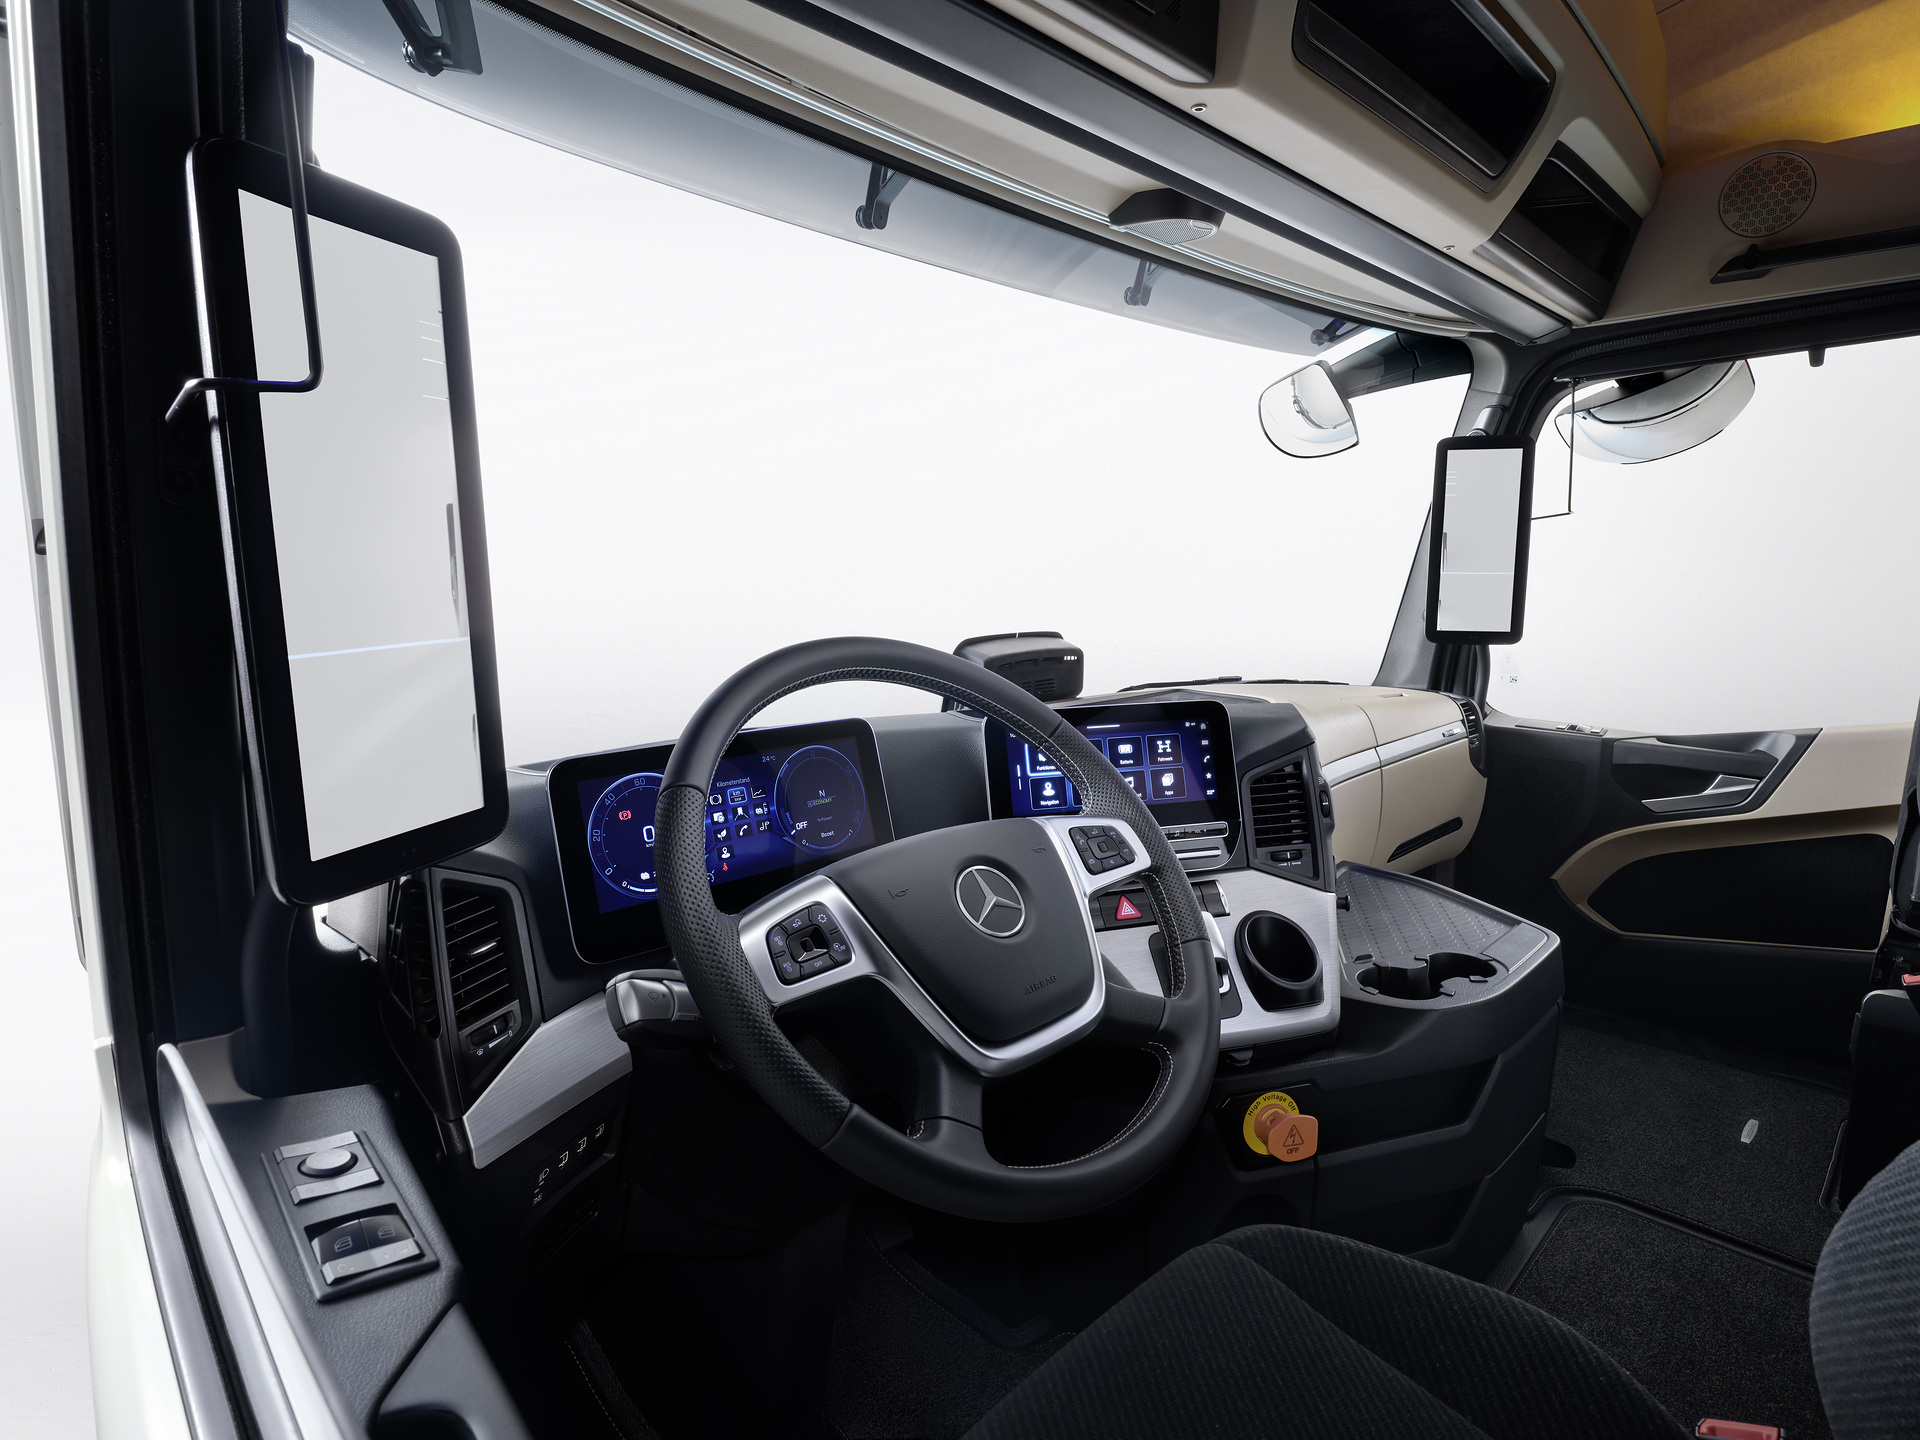 Mercedes-Benz Trucks feiert Weltpremiere des batterieelektrischen Fernverkehrs-Lkw eActros 600